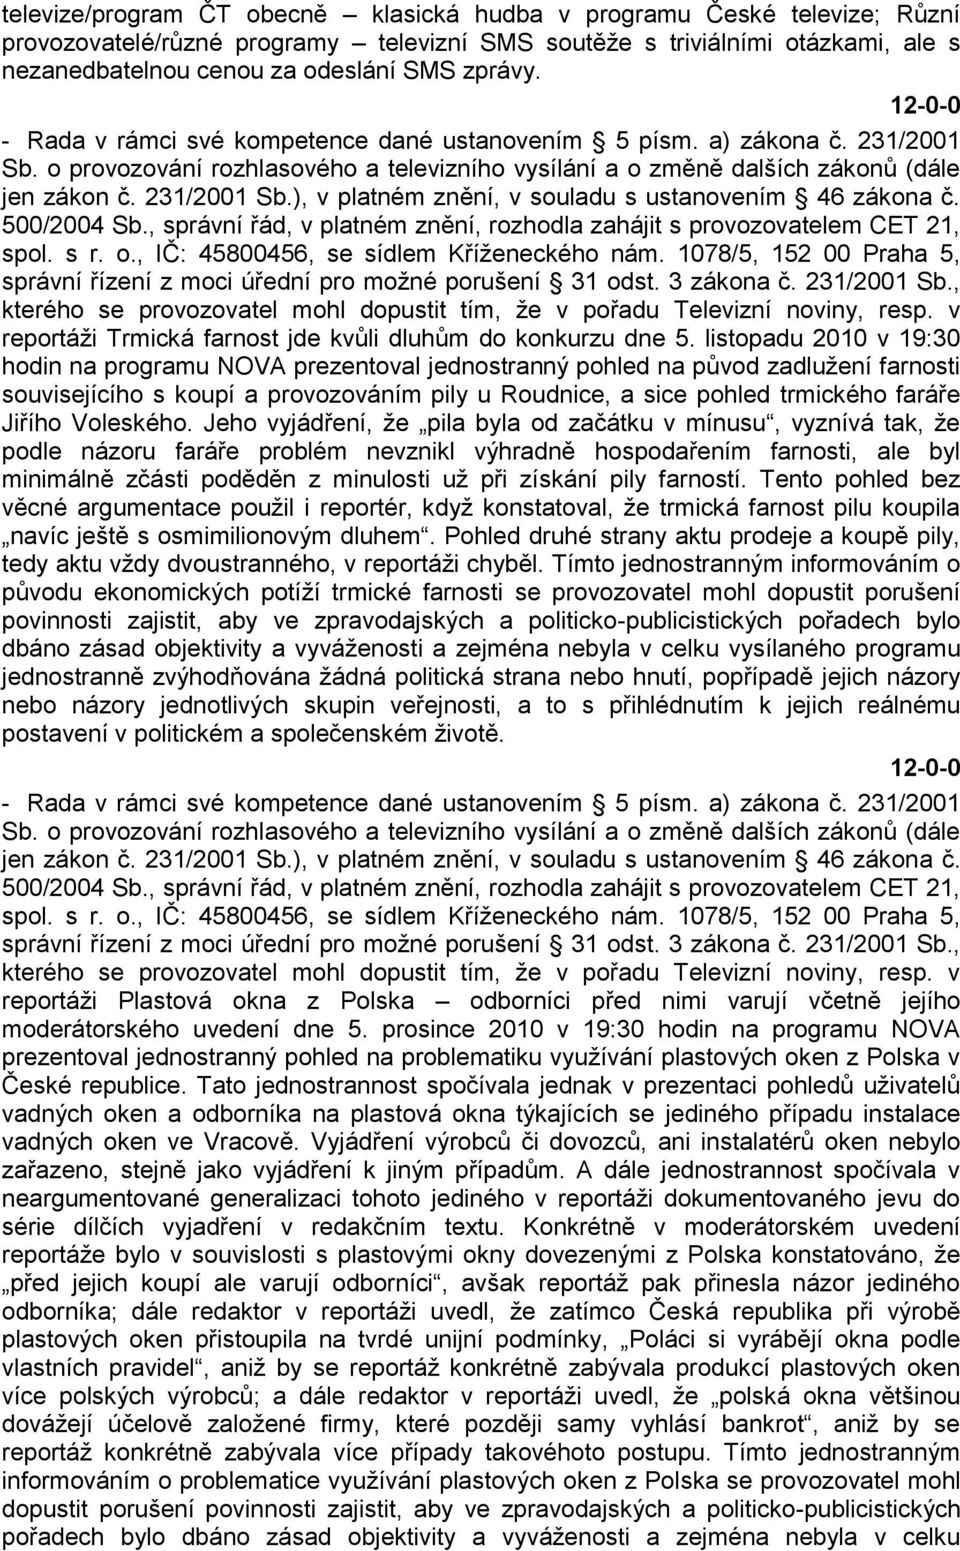 500/2004 Sb., správní řád, v platném znění, rozhodla zahájit s provozovatelem CET 21, spol. s r. o., IČ: 45800456, se sídlem Kříţeneckého nám.